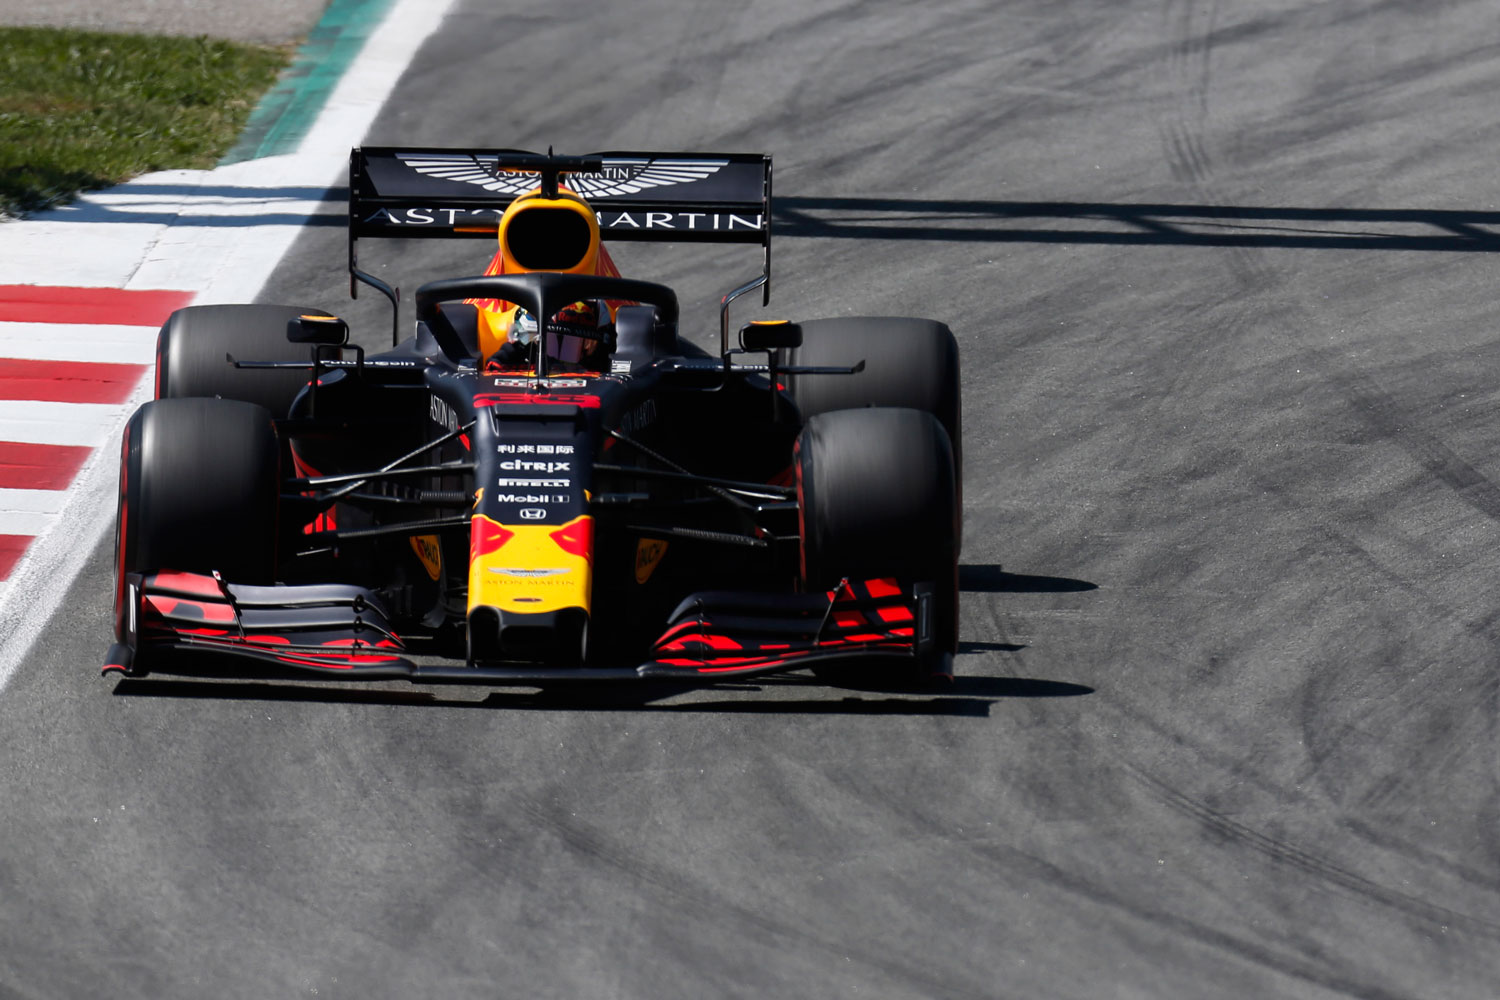 2019年のF1第5戦スペインGP決勝。ホンダがエンジンを供給するAston Martin Red Bull Racingは3位で、表彰台に立った。エンジンにはプレチャンバー技術を採用しているとみられる。（出所：ホンダ）